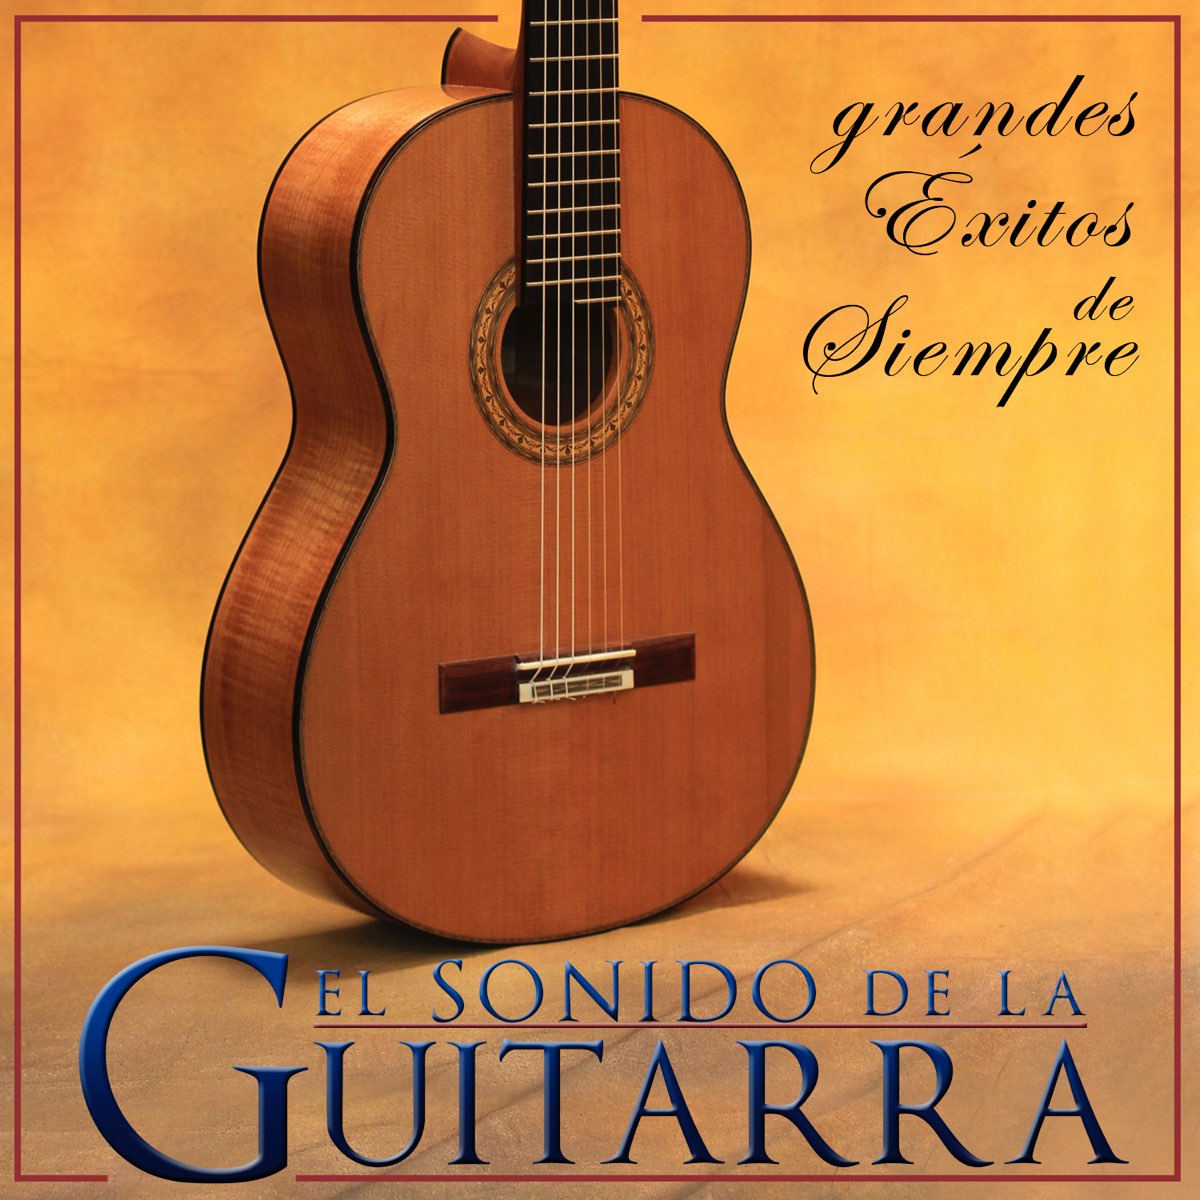 El Sonido de la Guitarra - Grandes Éxitos de Siempre by Juan España on  Apple Music